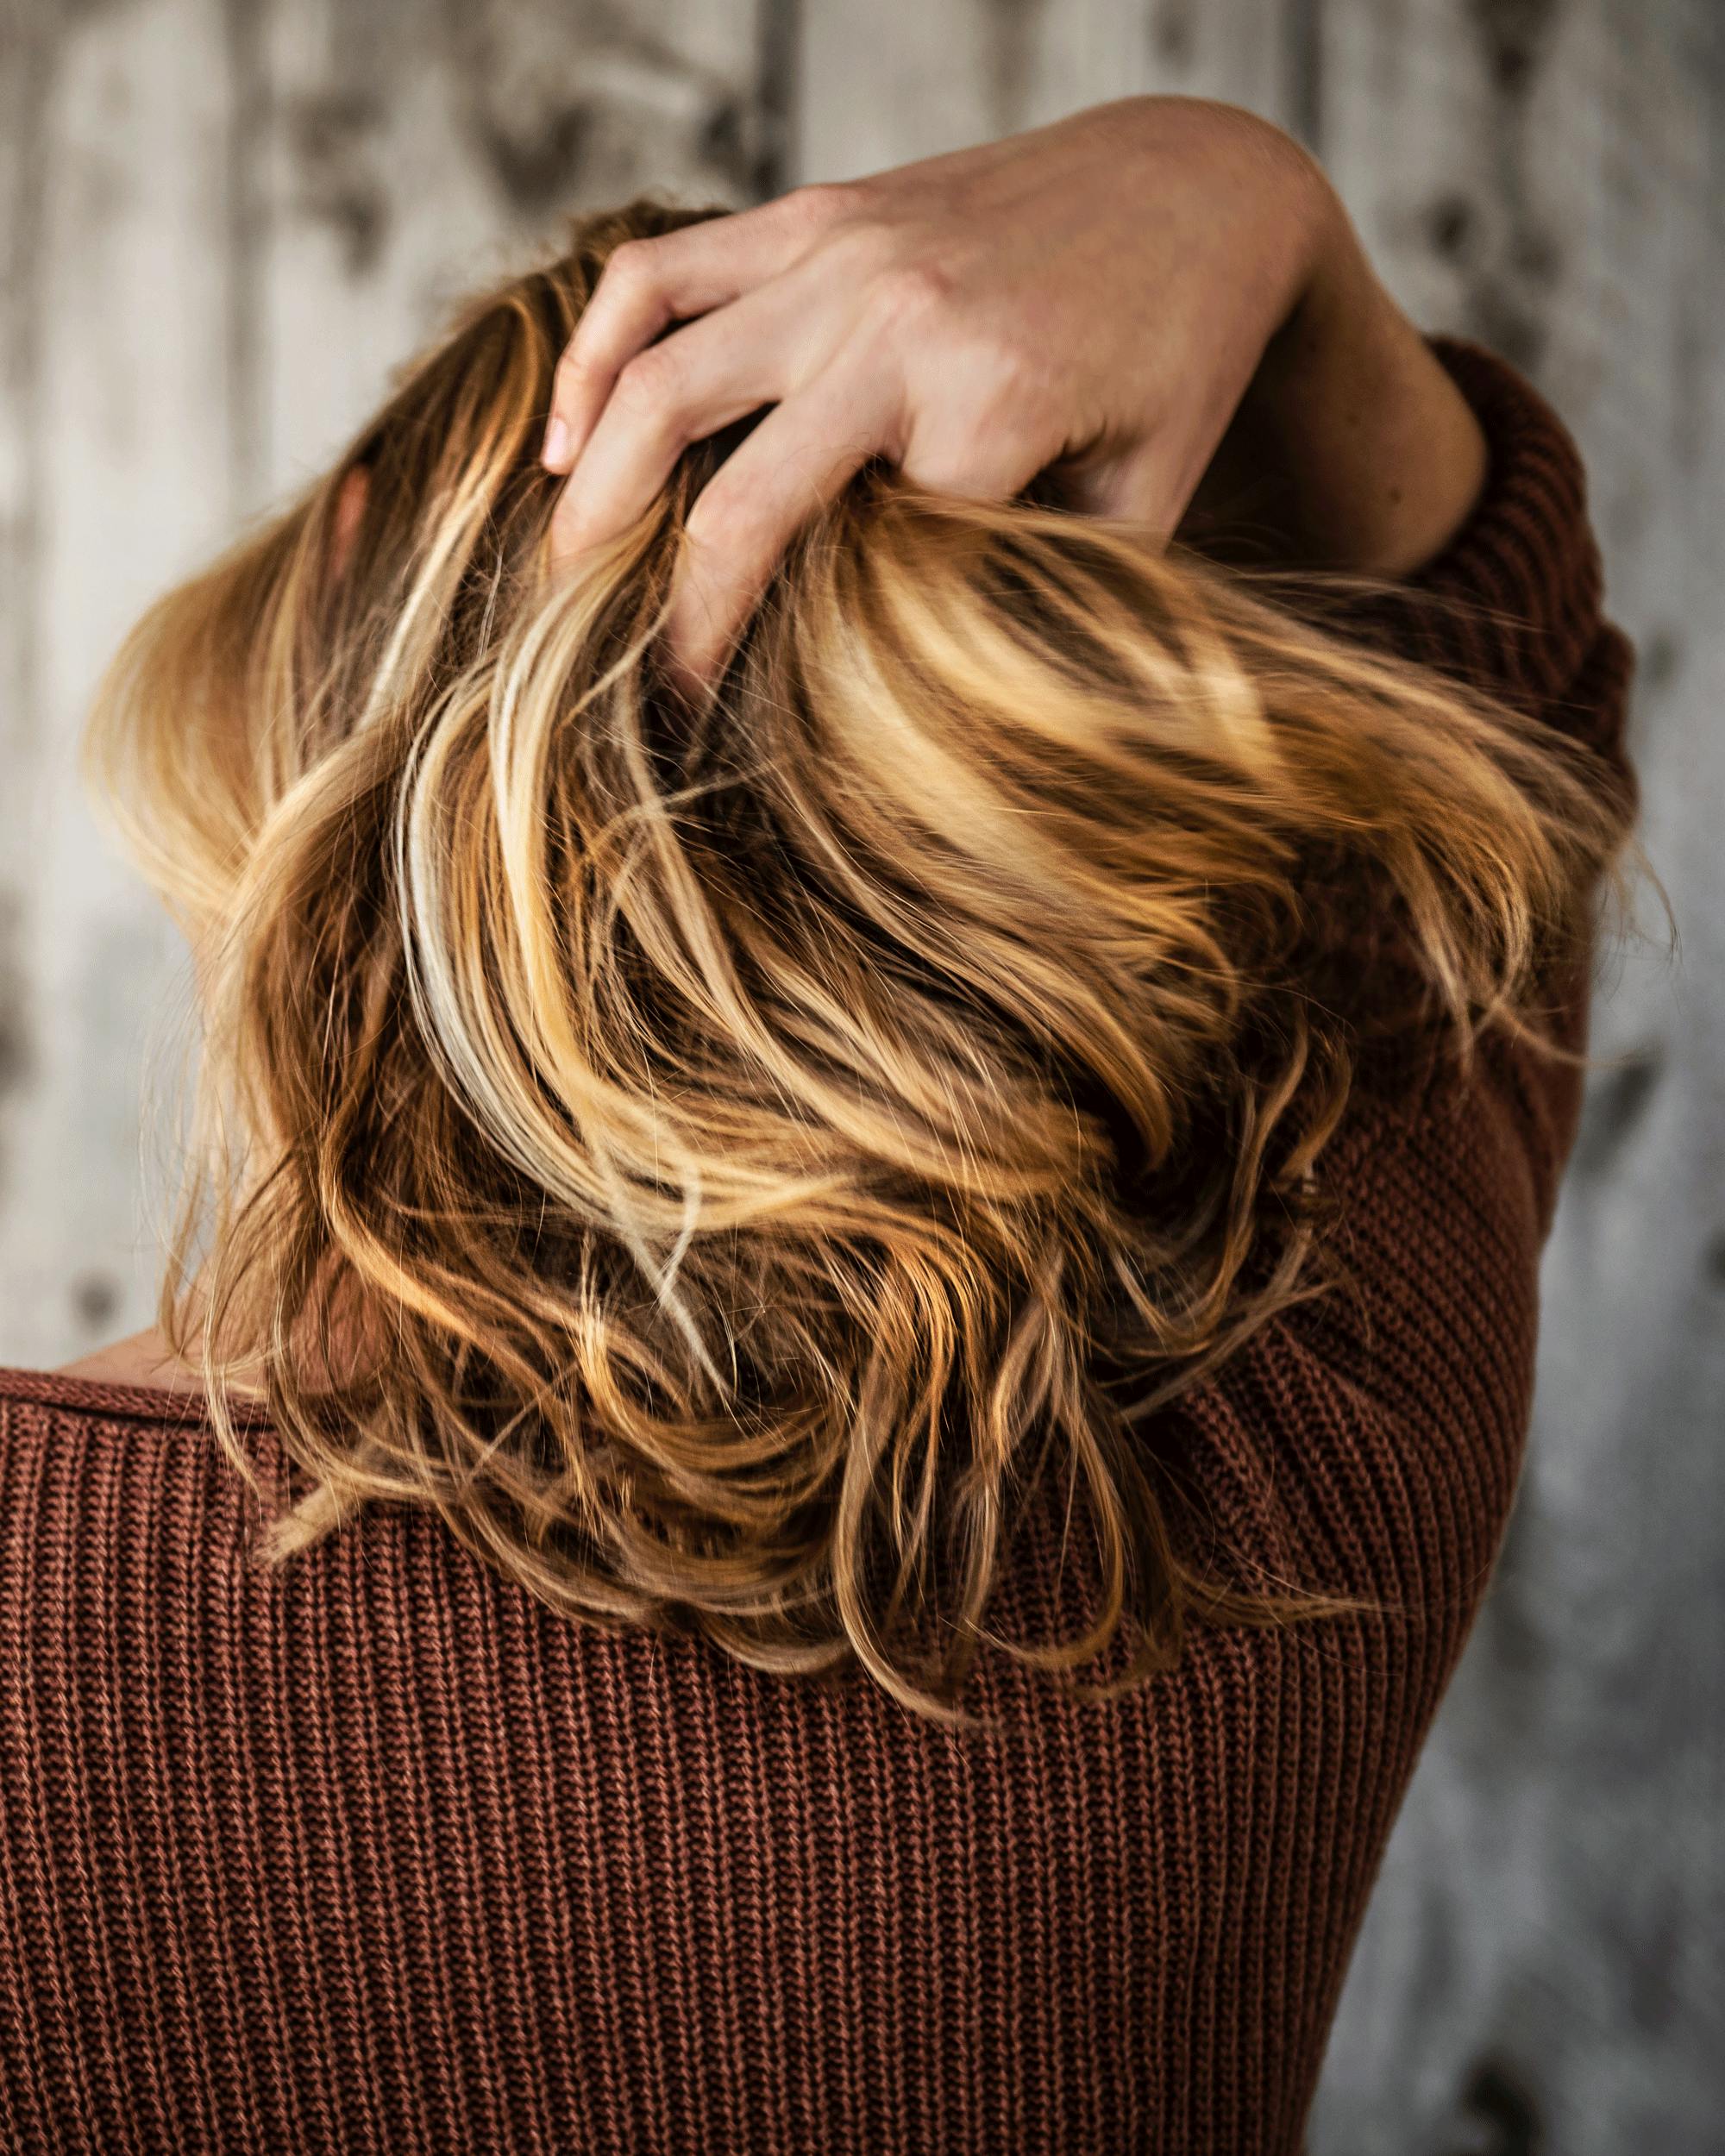 Elektrisk hår: Få tre tips til at slippe med elektrisk hår | femina